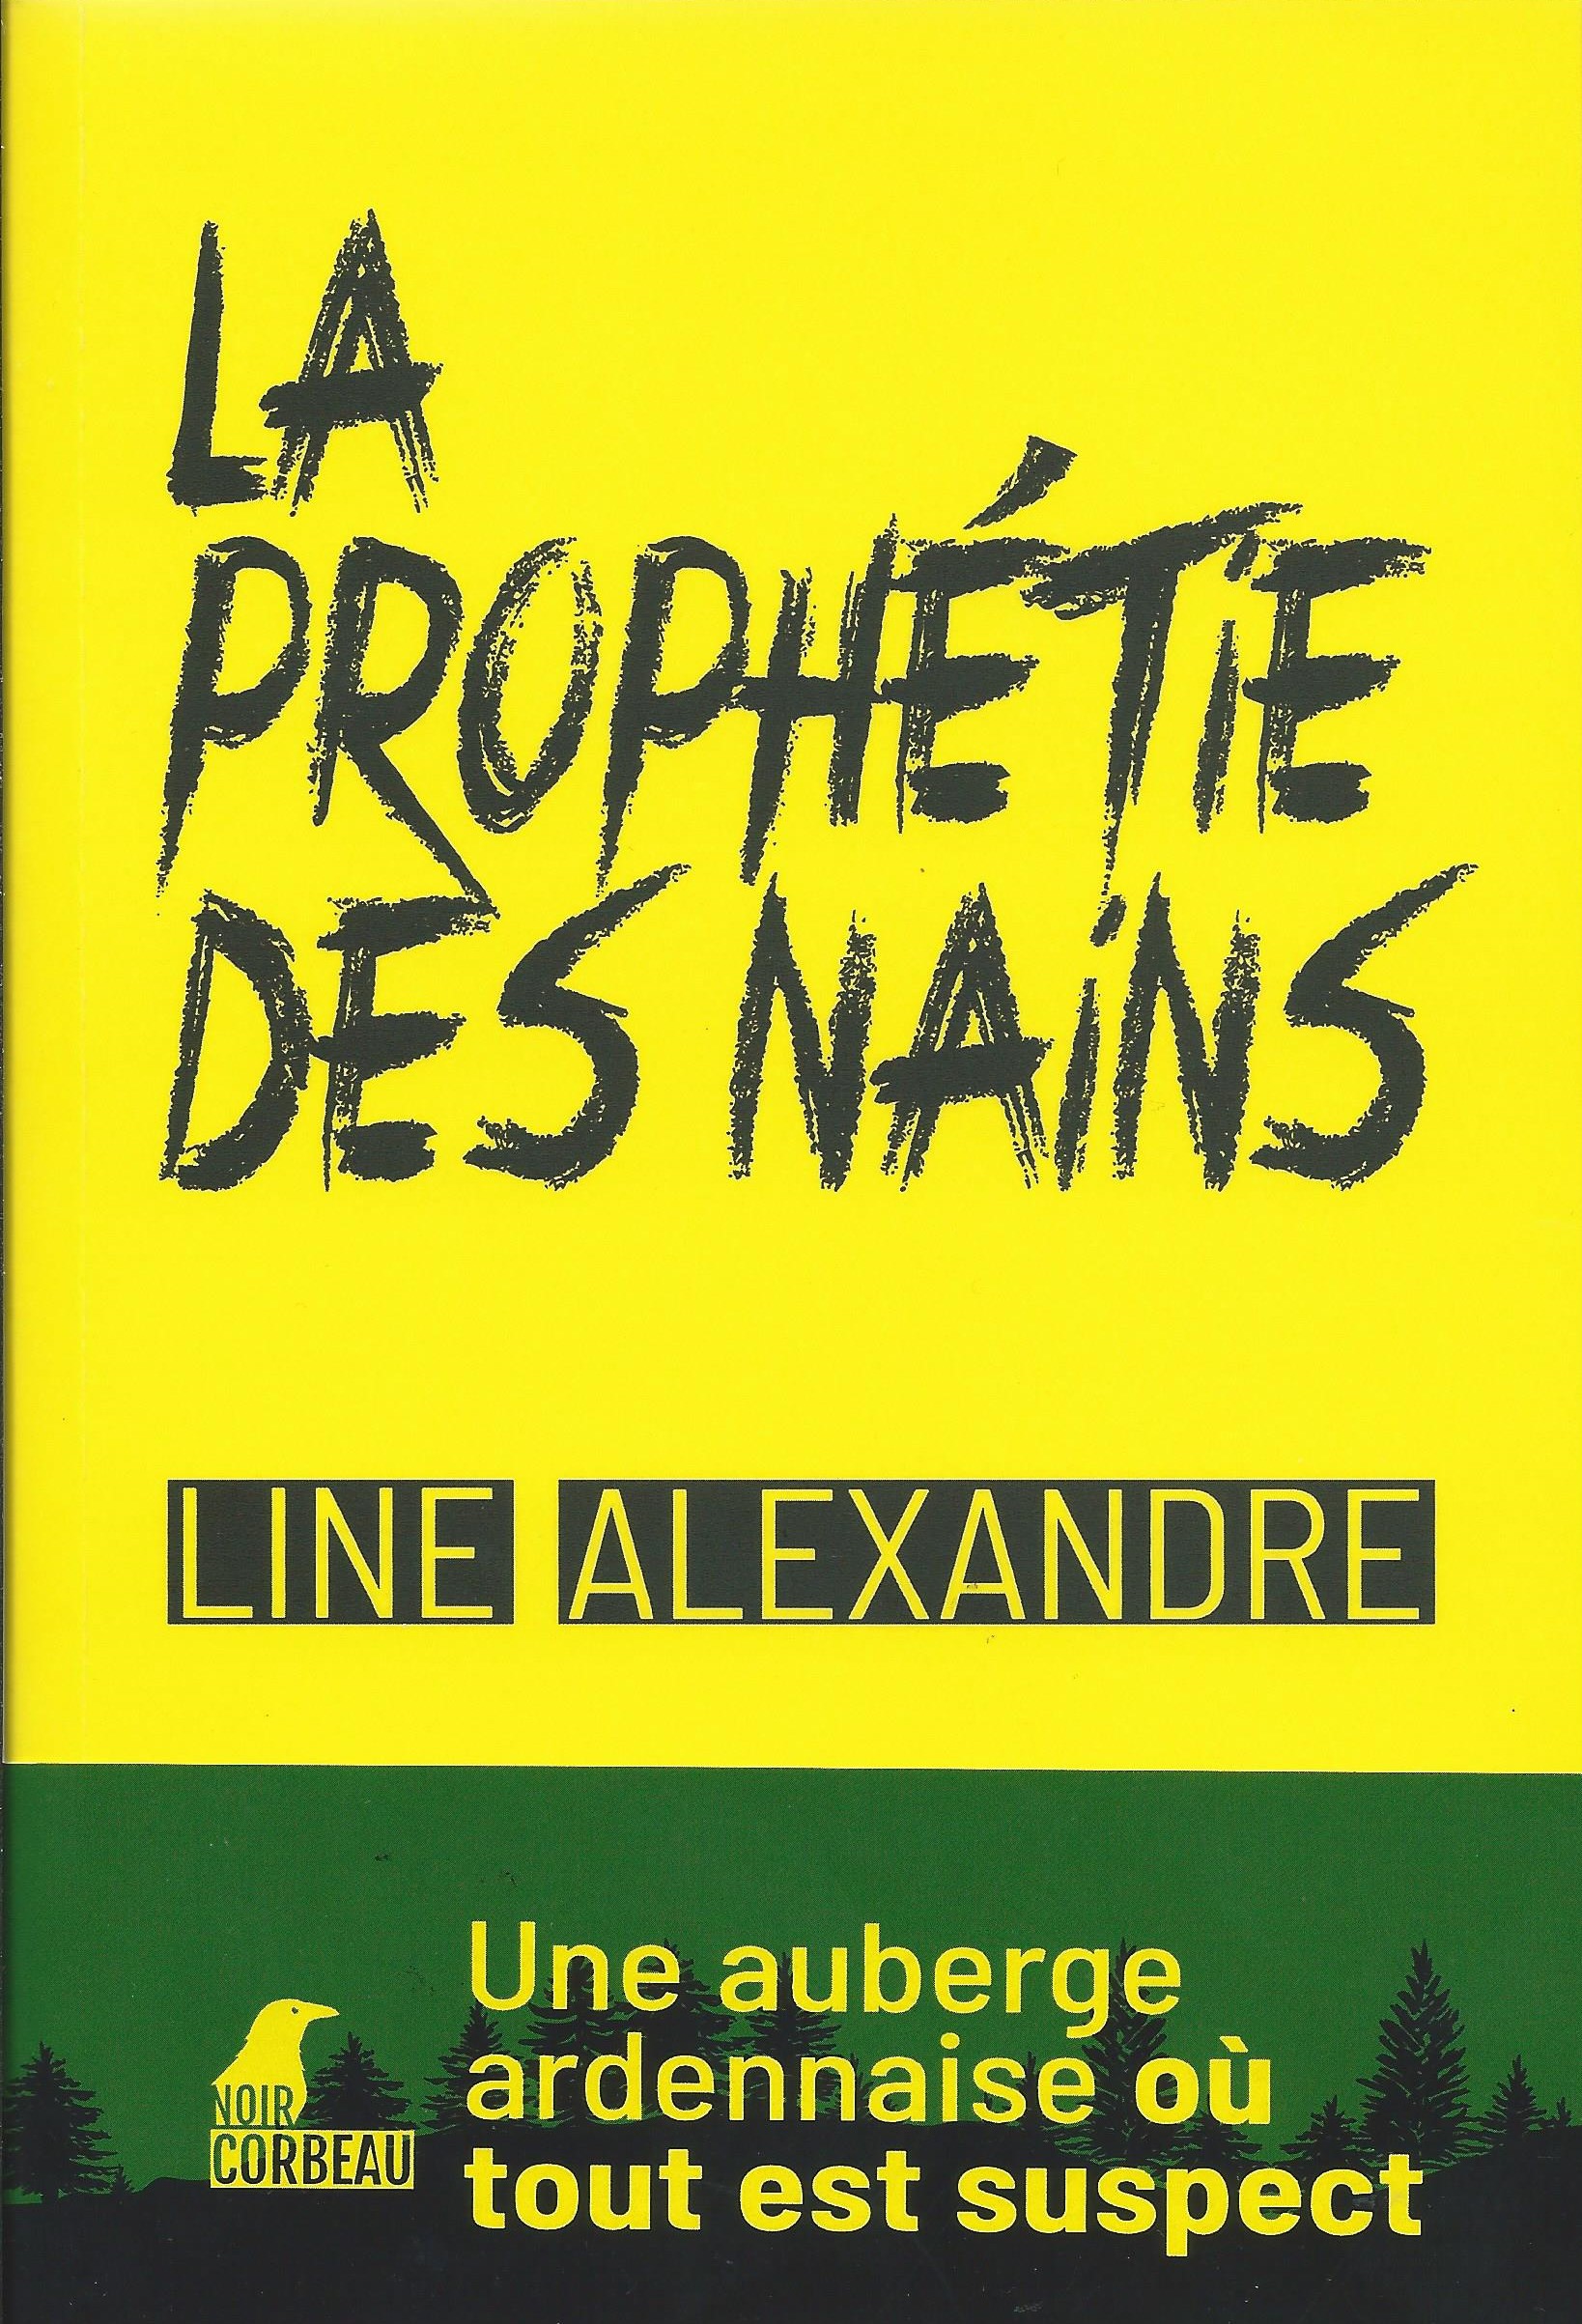 LINE ALEXANDRE - La prophétie des nains